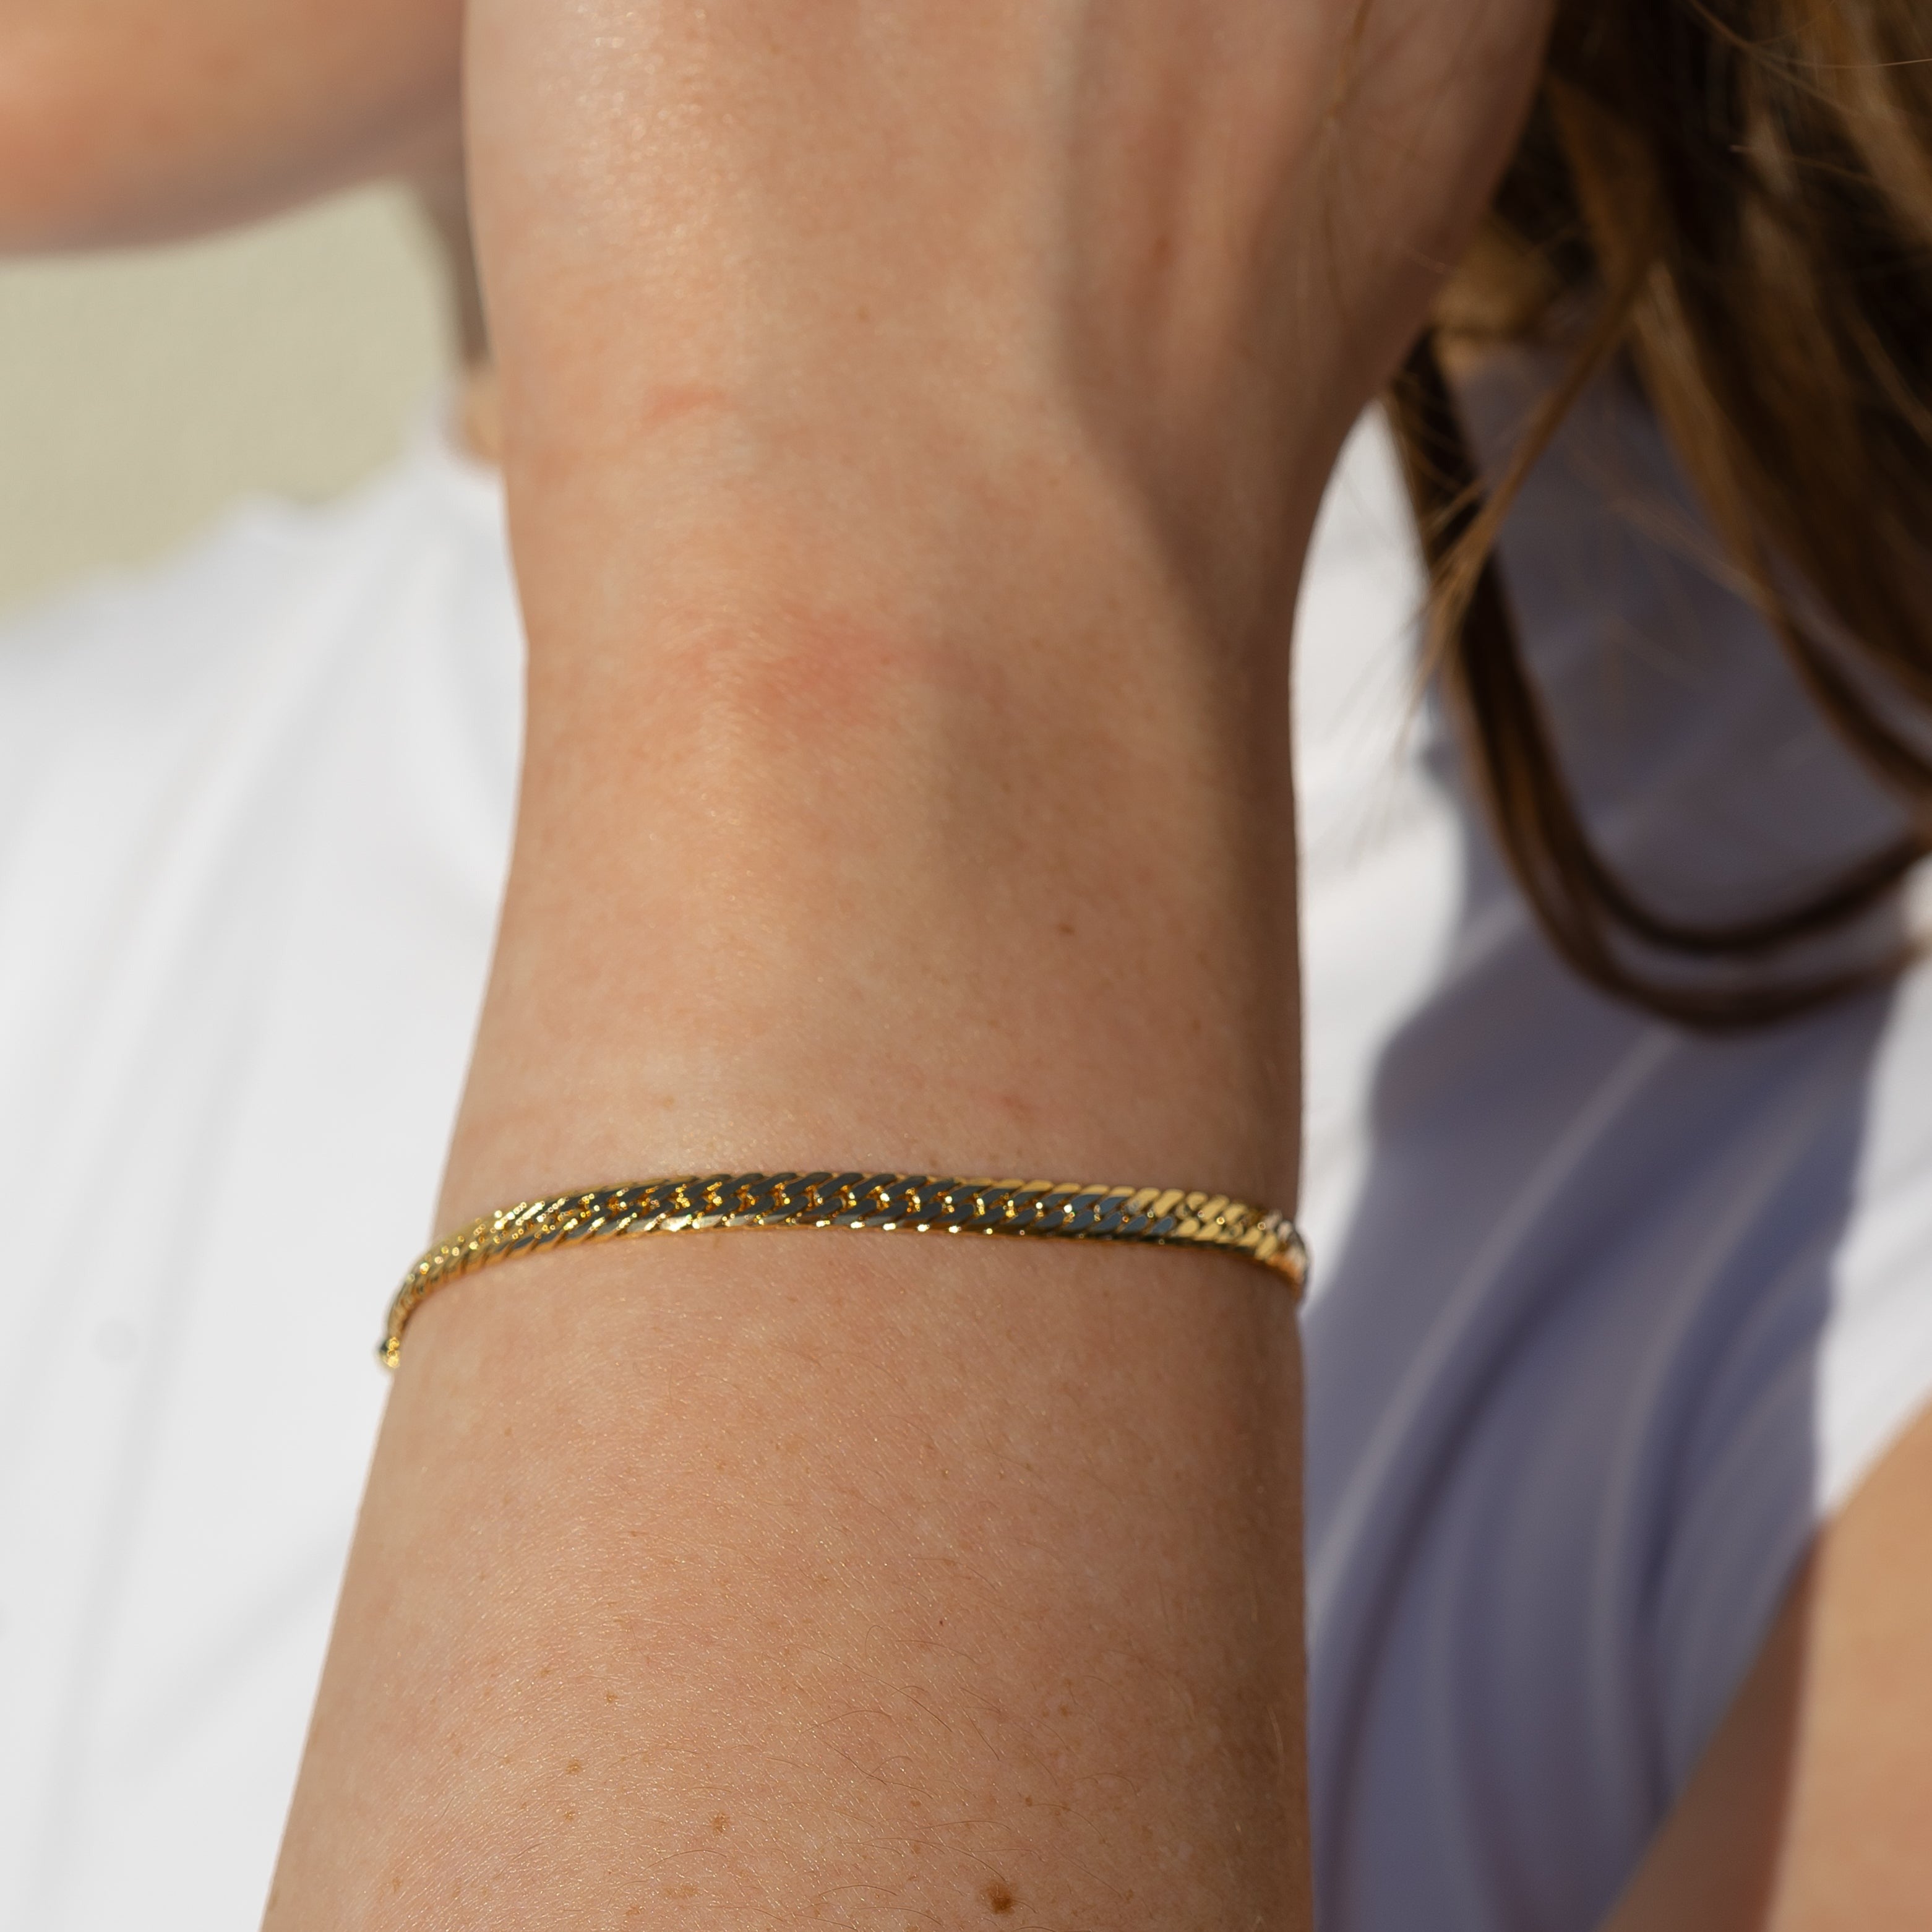 Share more than 131 gold herringbone bracelet